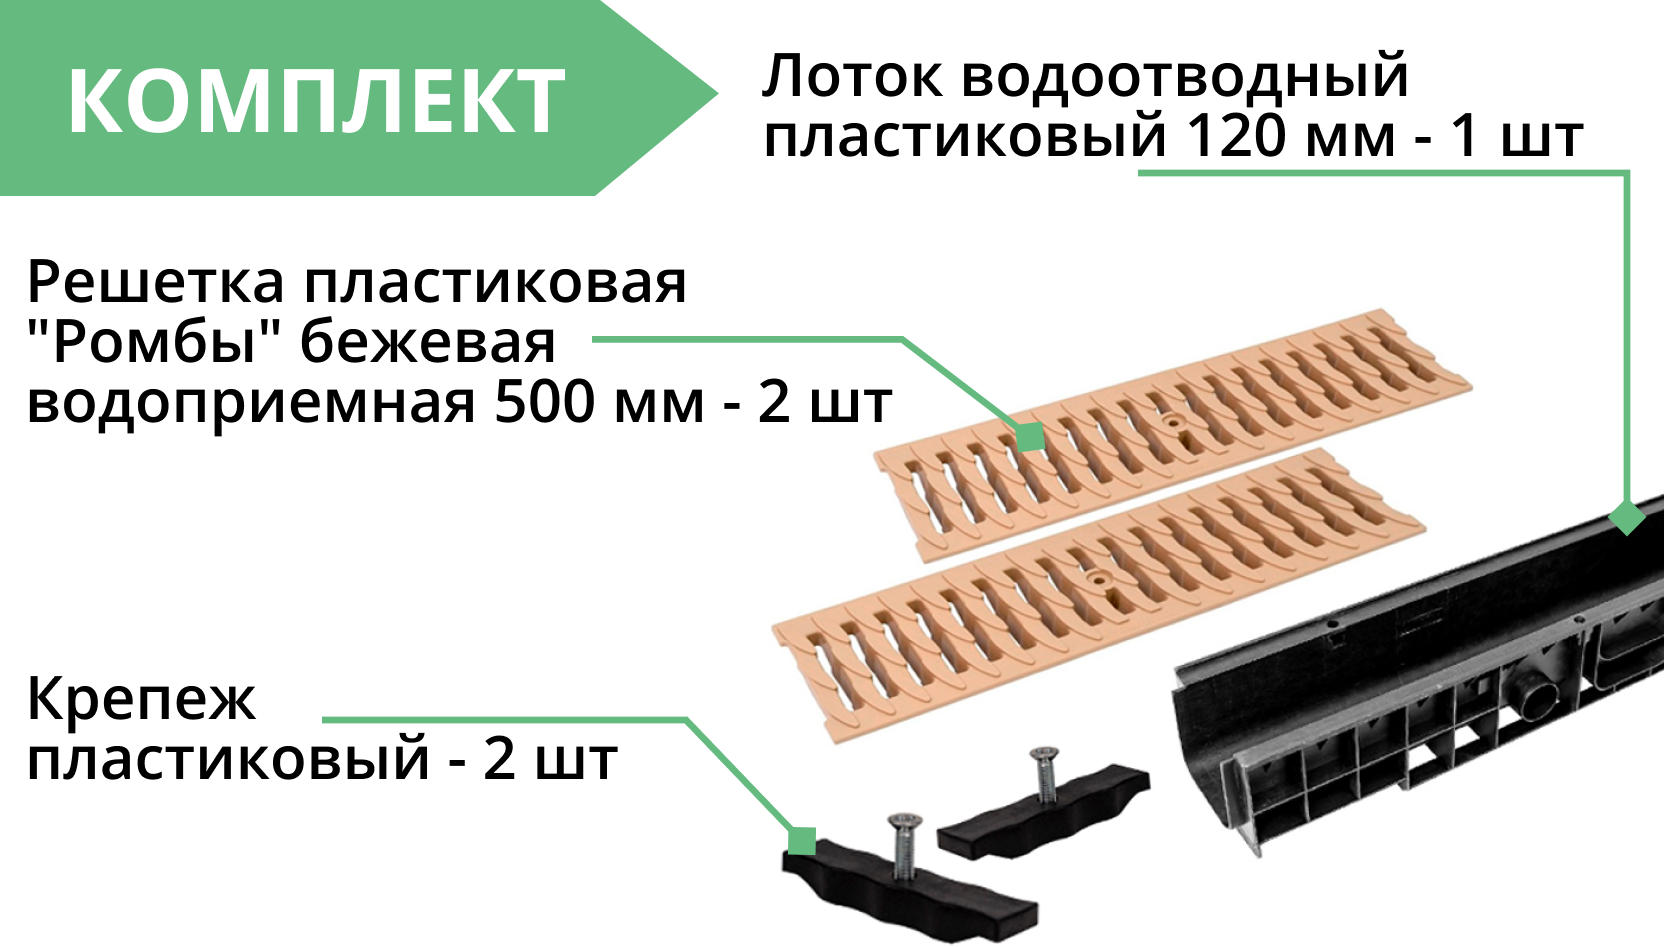 Комплект: Лоток Европартнер 120 мм с пластиковыми решетками бежевыми "Ромбы" 1 метр 3